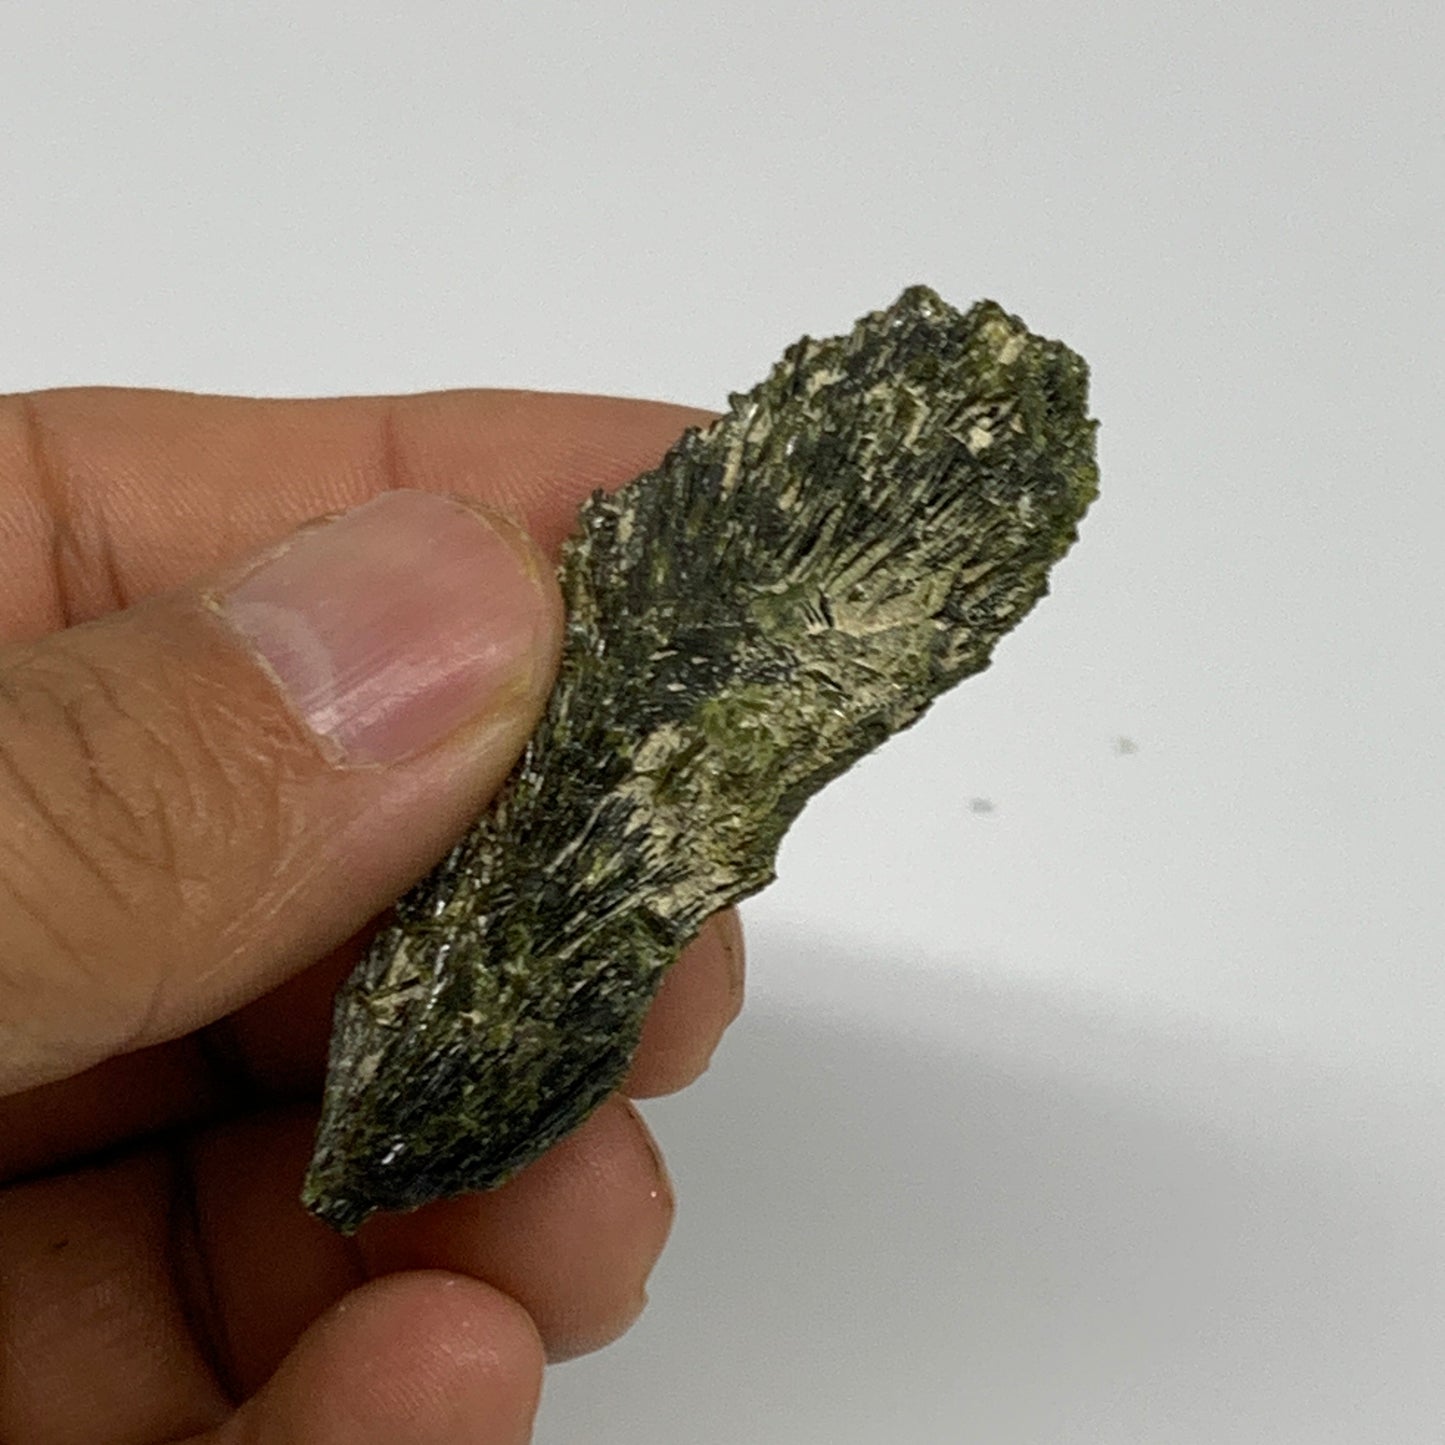 21.9g,2.1"x1.2"x0.5",Green Epidote Custer/Leaf Mineral Specimen @Pakistan,B27614